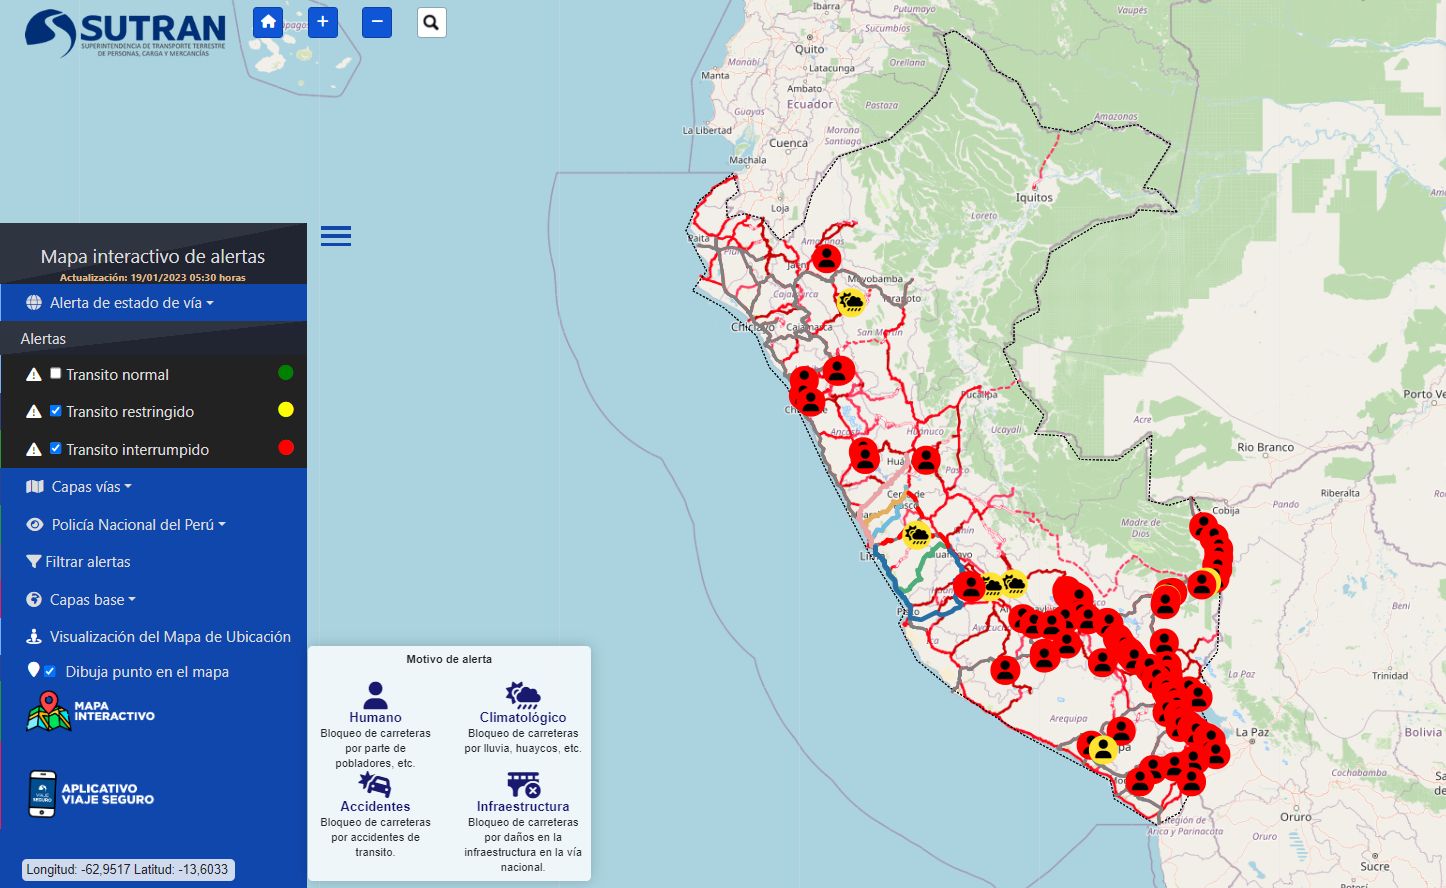 Bloqueos de carreteras en todo el Perú